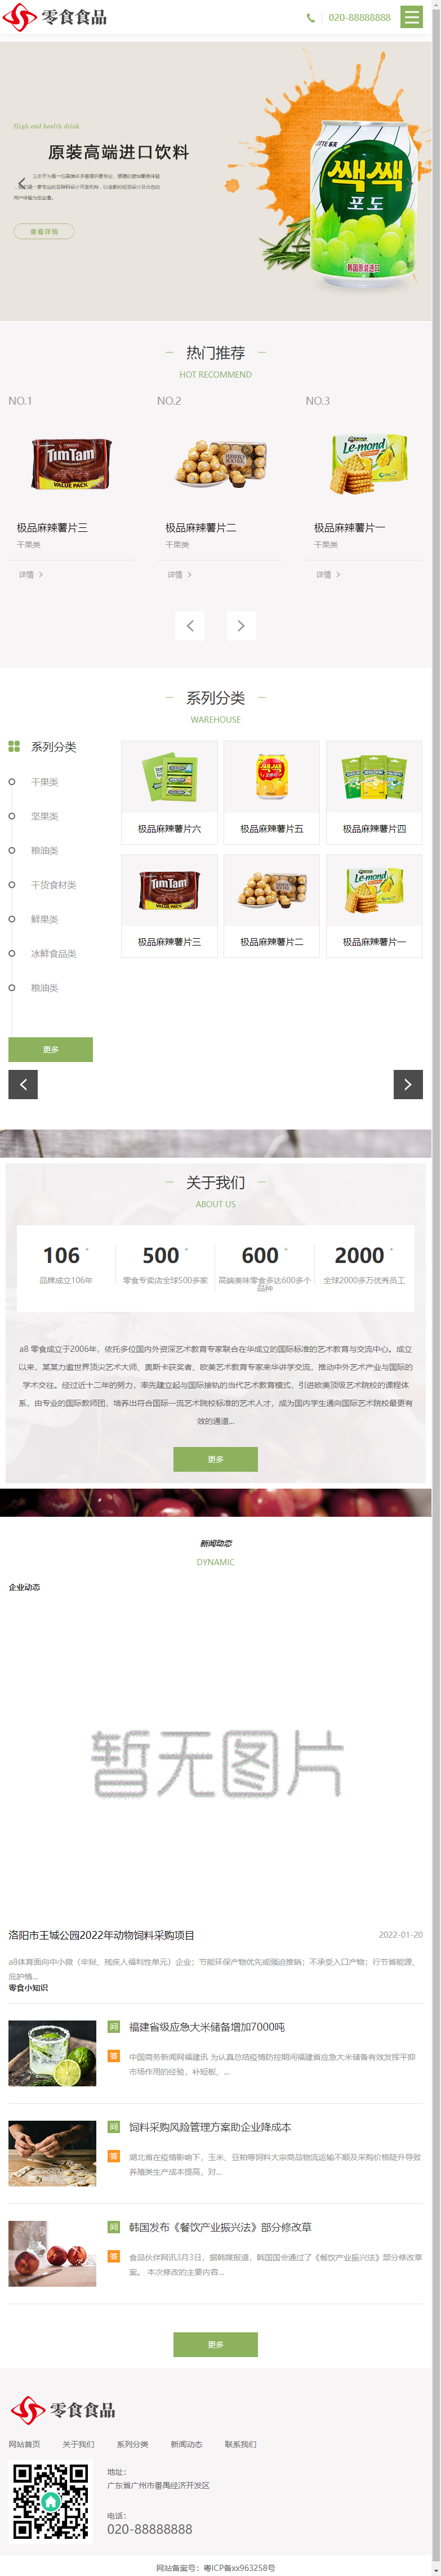 忻州市尚雅家具有限公司网站案例